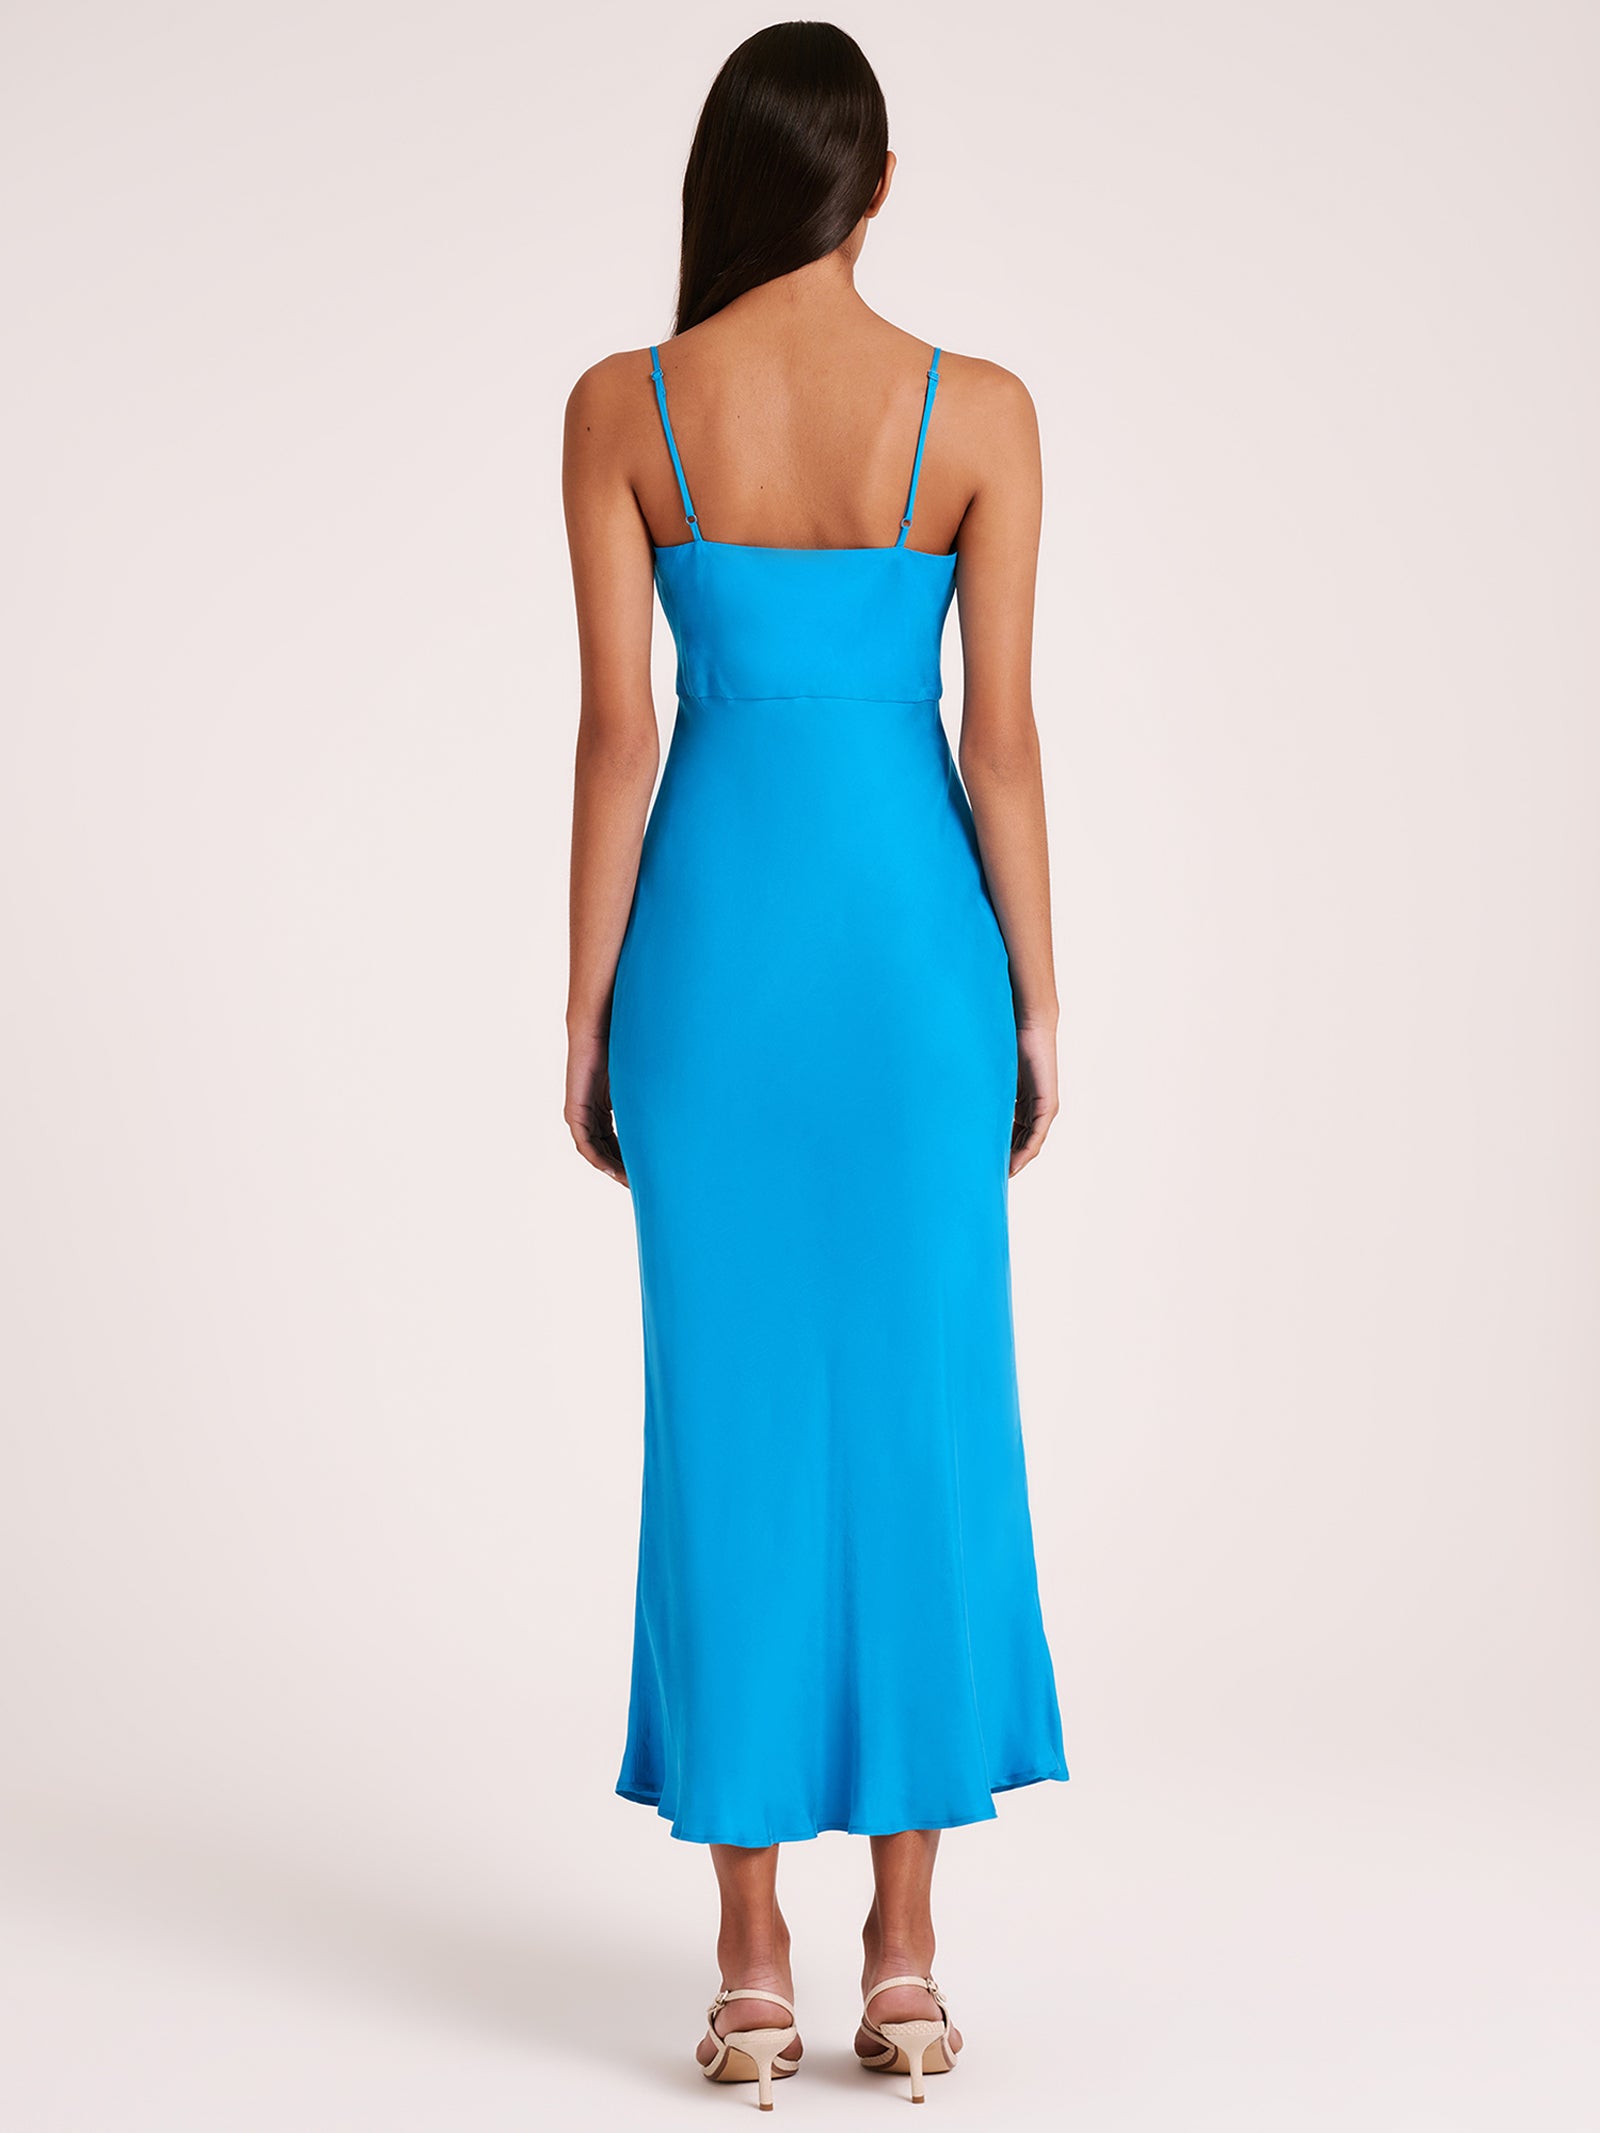 Lea Cupro Dress in Azure Blue